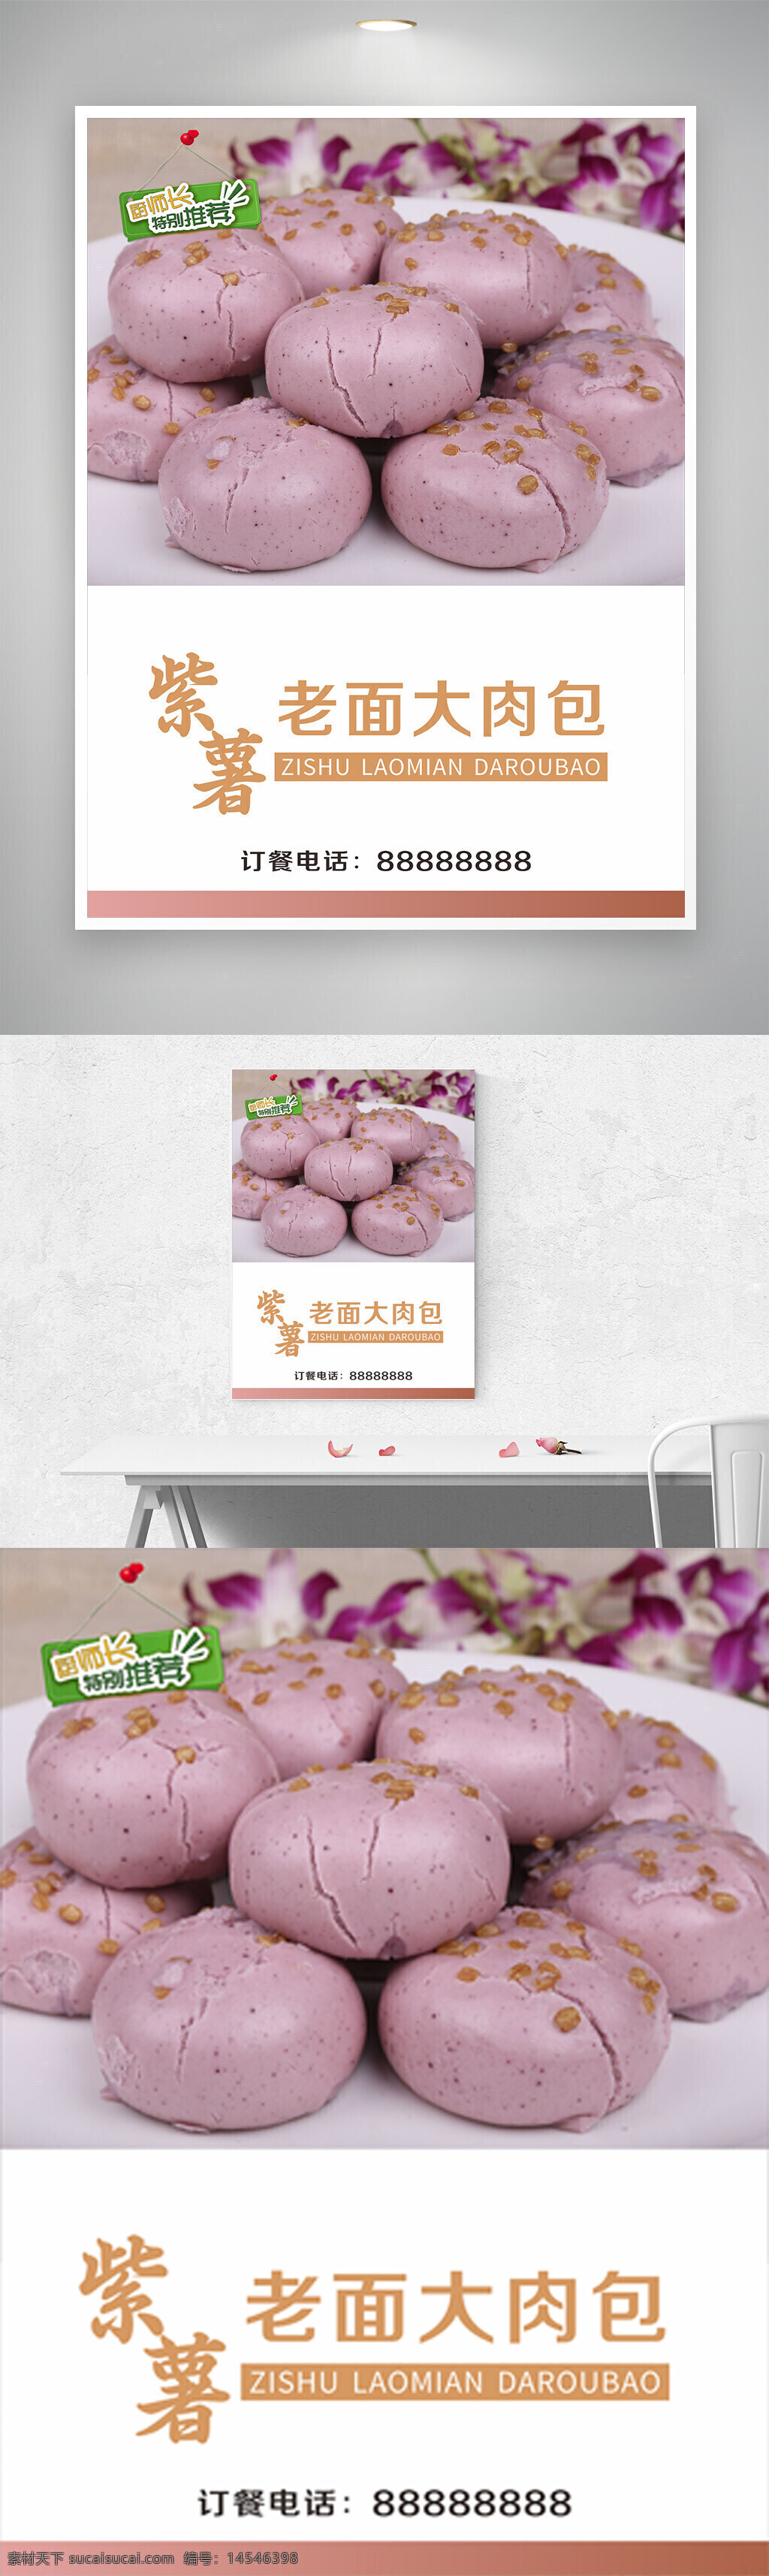 紫薯老面大肉包海报 中国特色美食 紫薯 老面馒头 猪肉 包子 新菜上市 新品上市 家常菜 农家菜